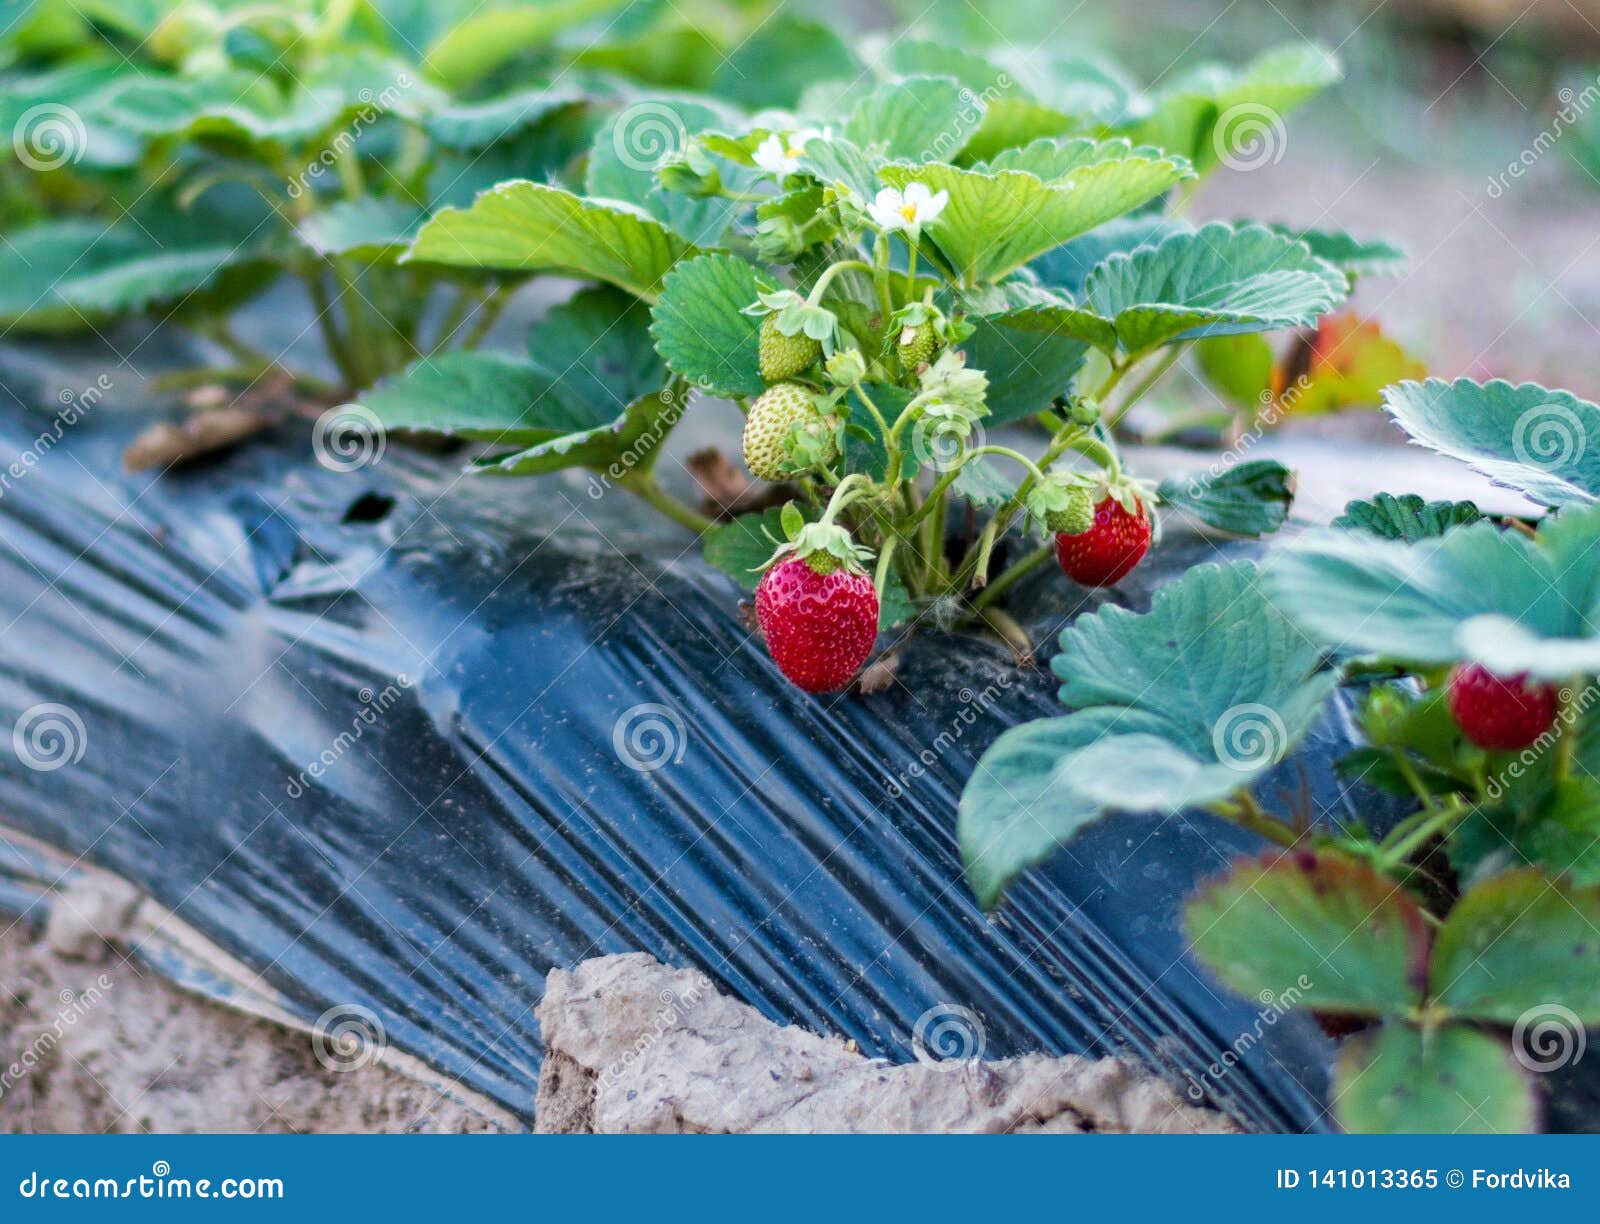 growing strawberries.